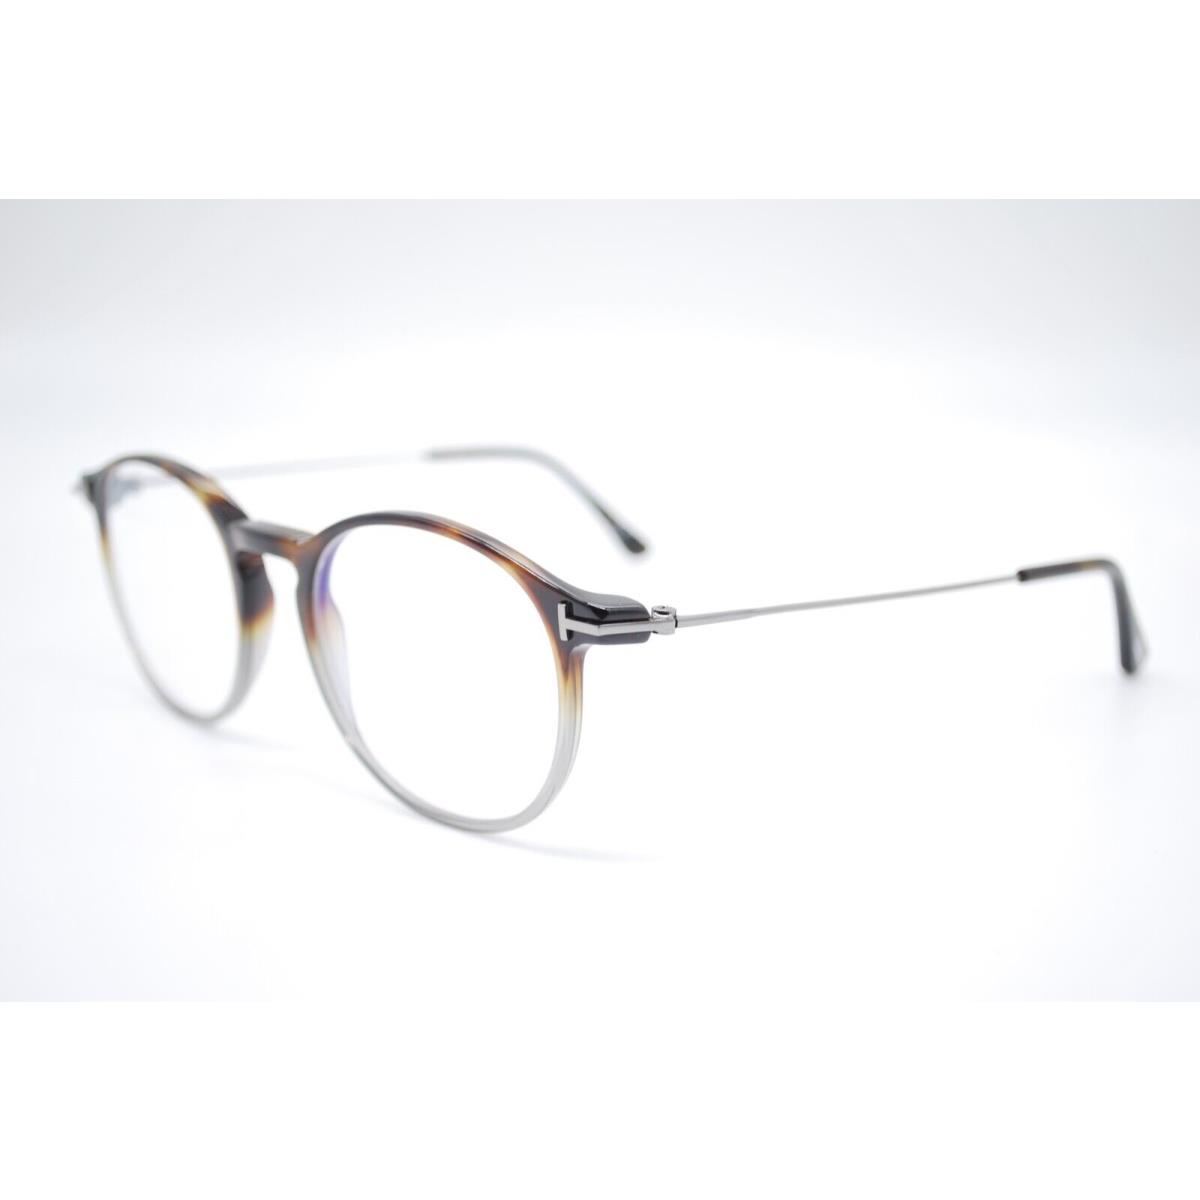 Tom Ford eyeglasses  - GRAY HAVANA Frame 0